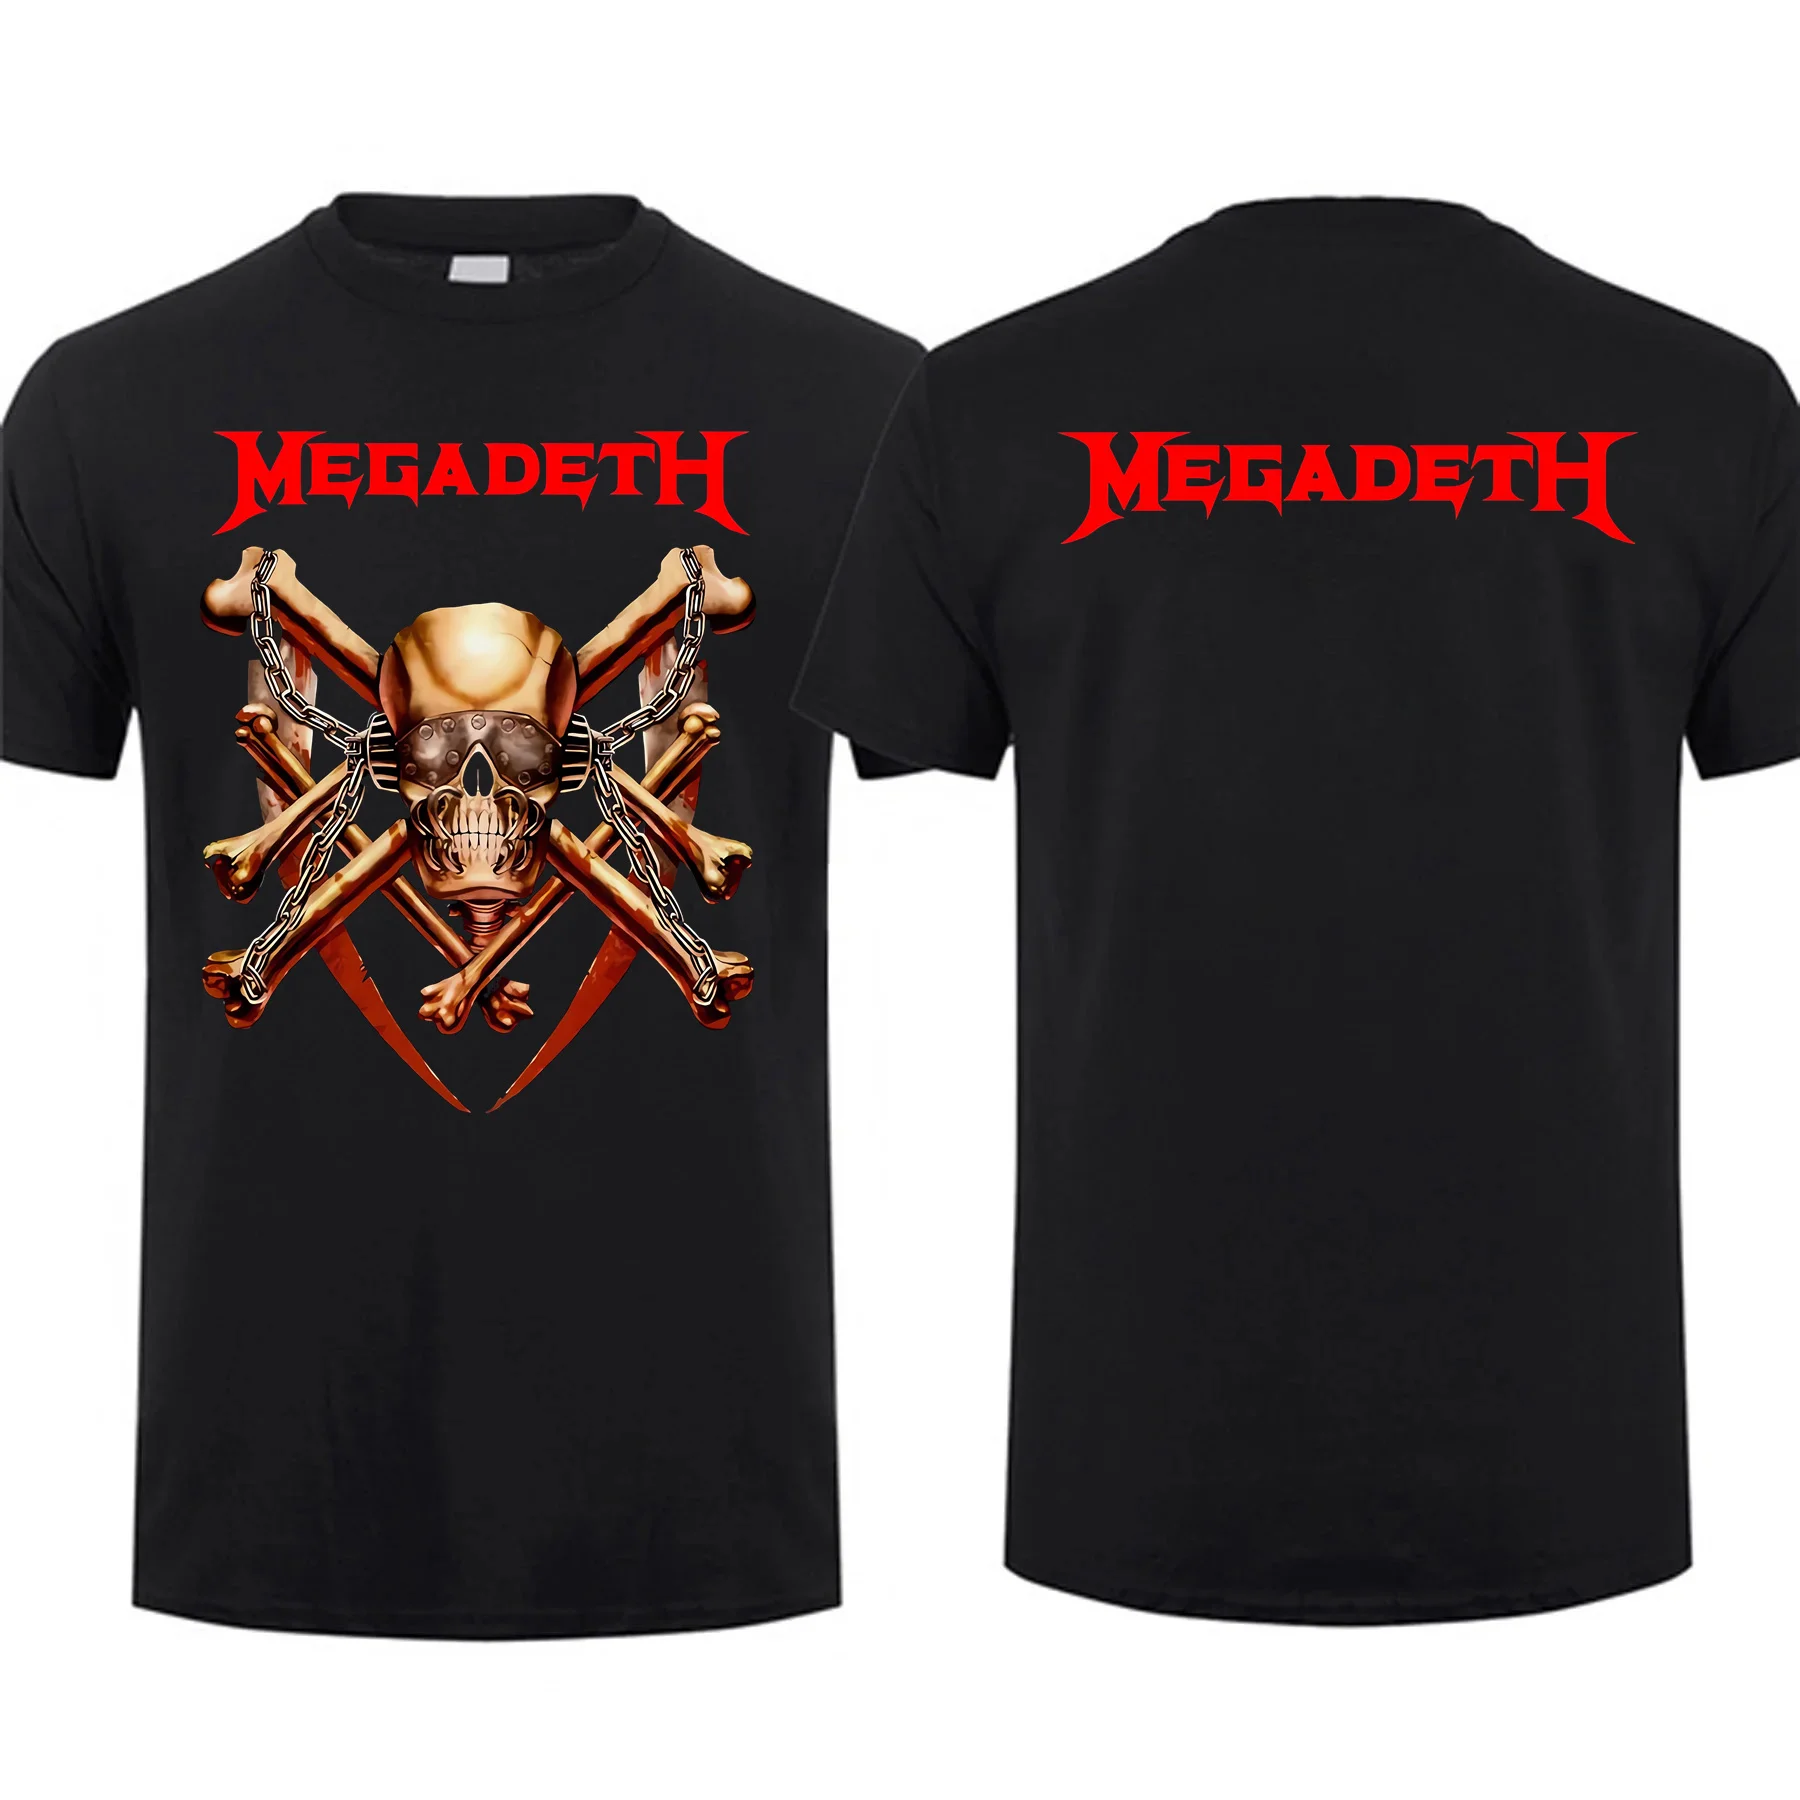 Homens de dupla face camiseta de grandes dimensões, Black Friday, Amazing Tees, Europa Megadeths, gráfico, manga curta, S-3XL